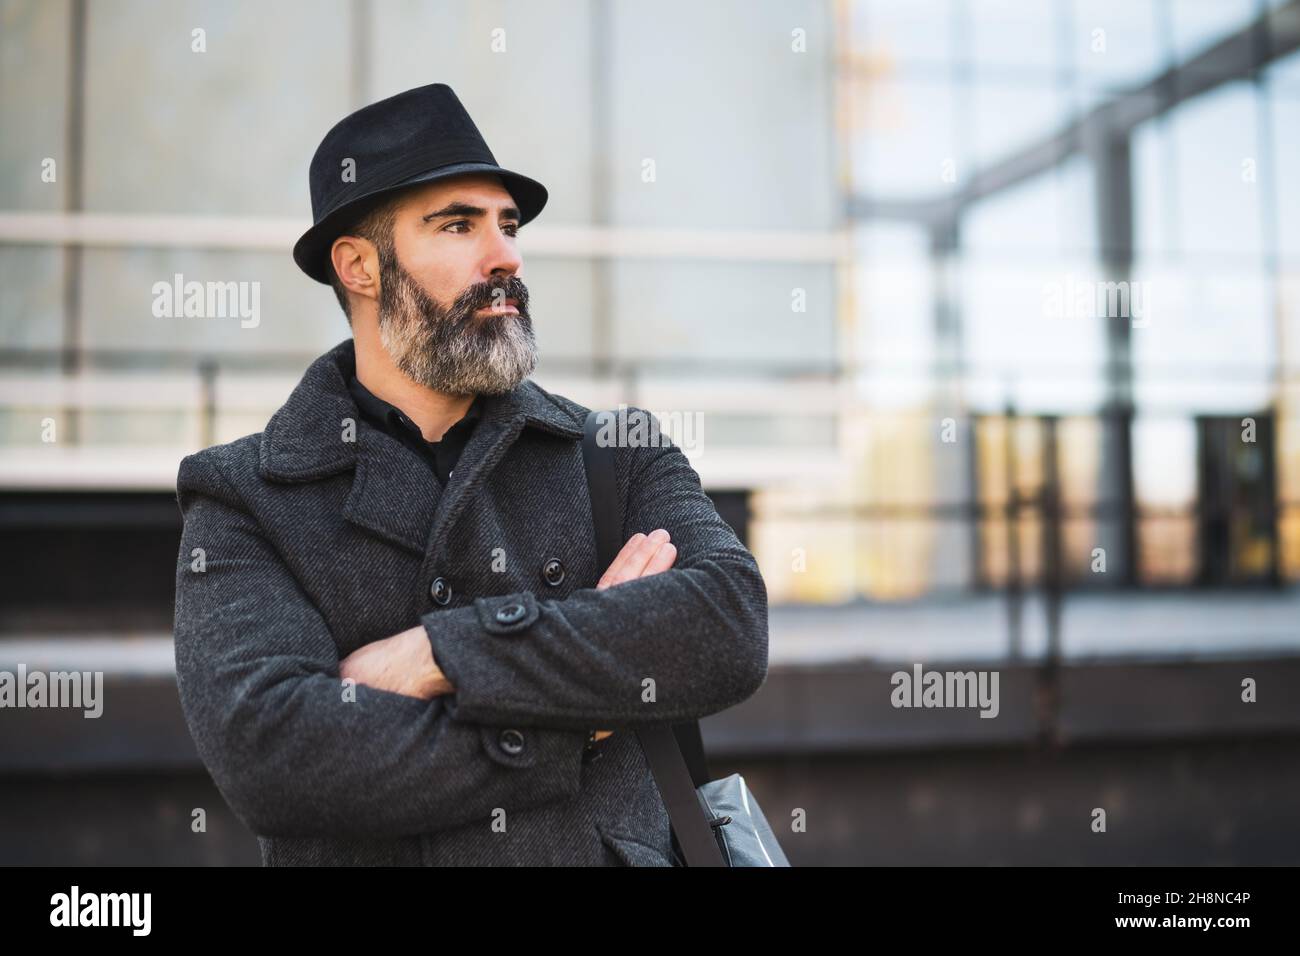 Retrato de de negocios con ropa negra frente al edificio de la empresa. El hombre con barba negra lleva ropa de invierno Fotografía de stock -